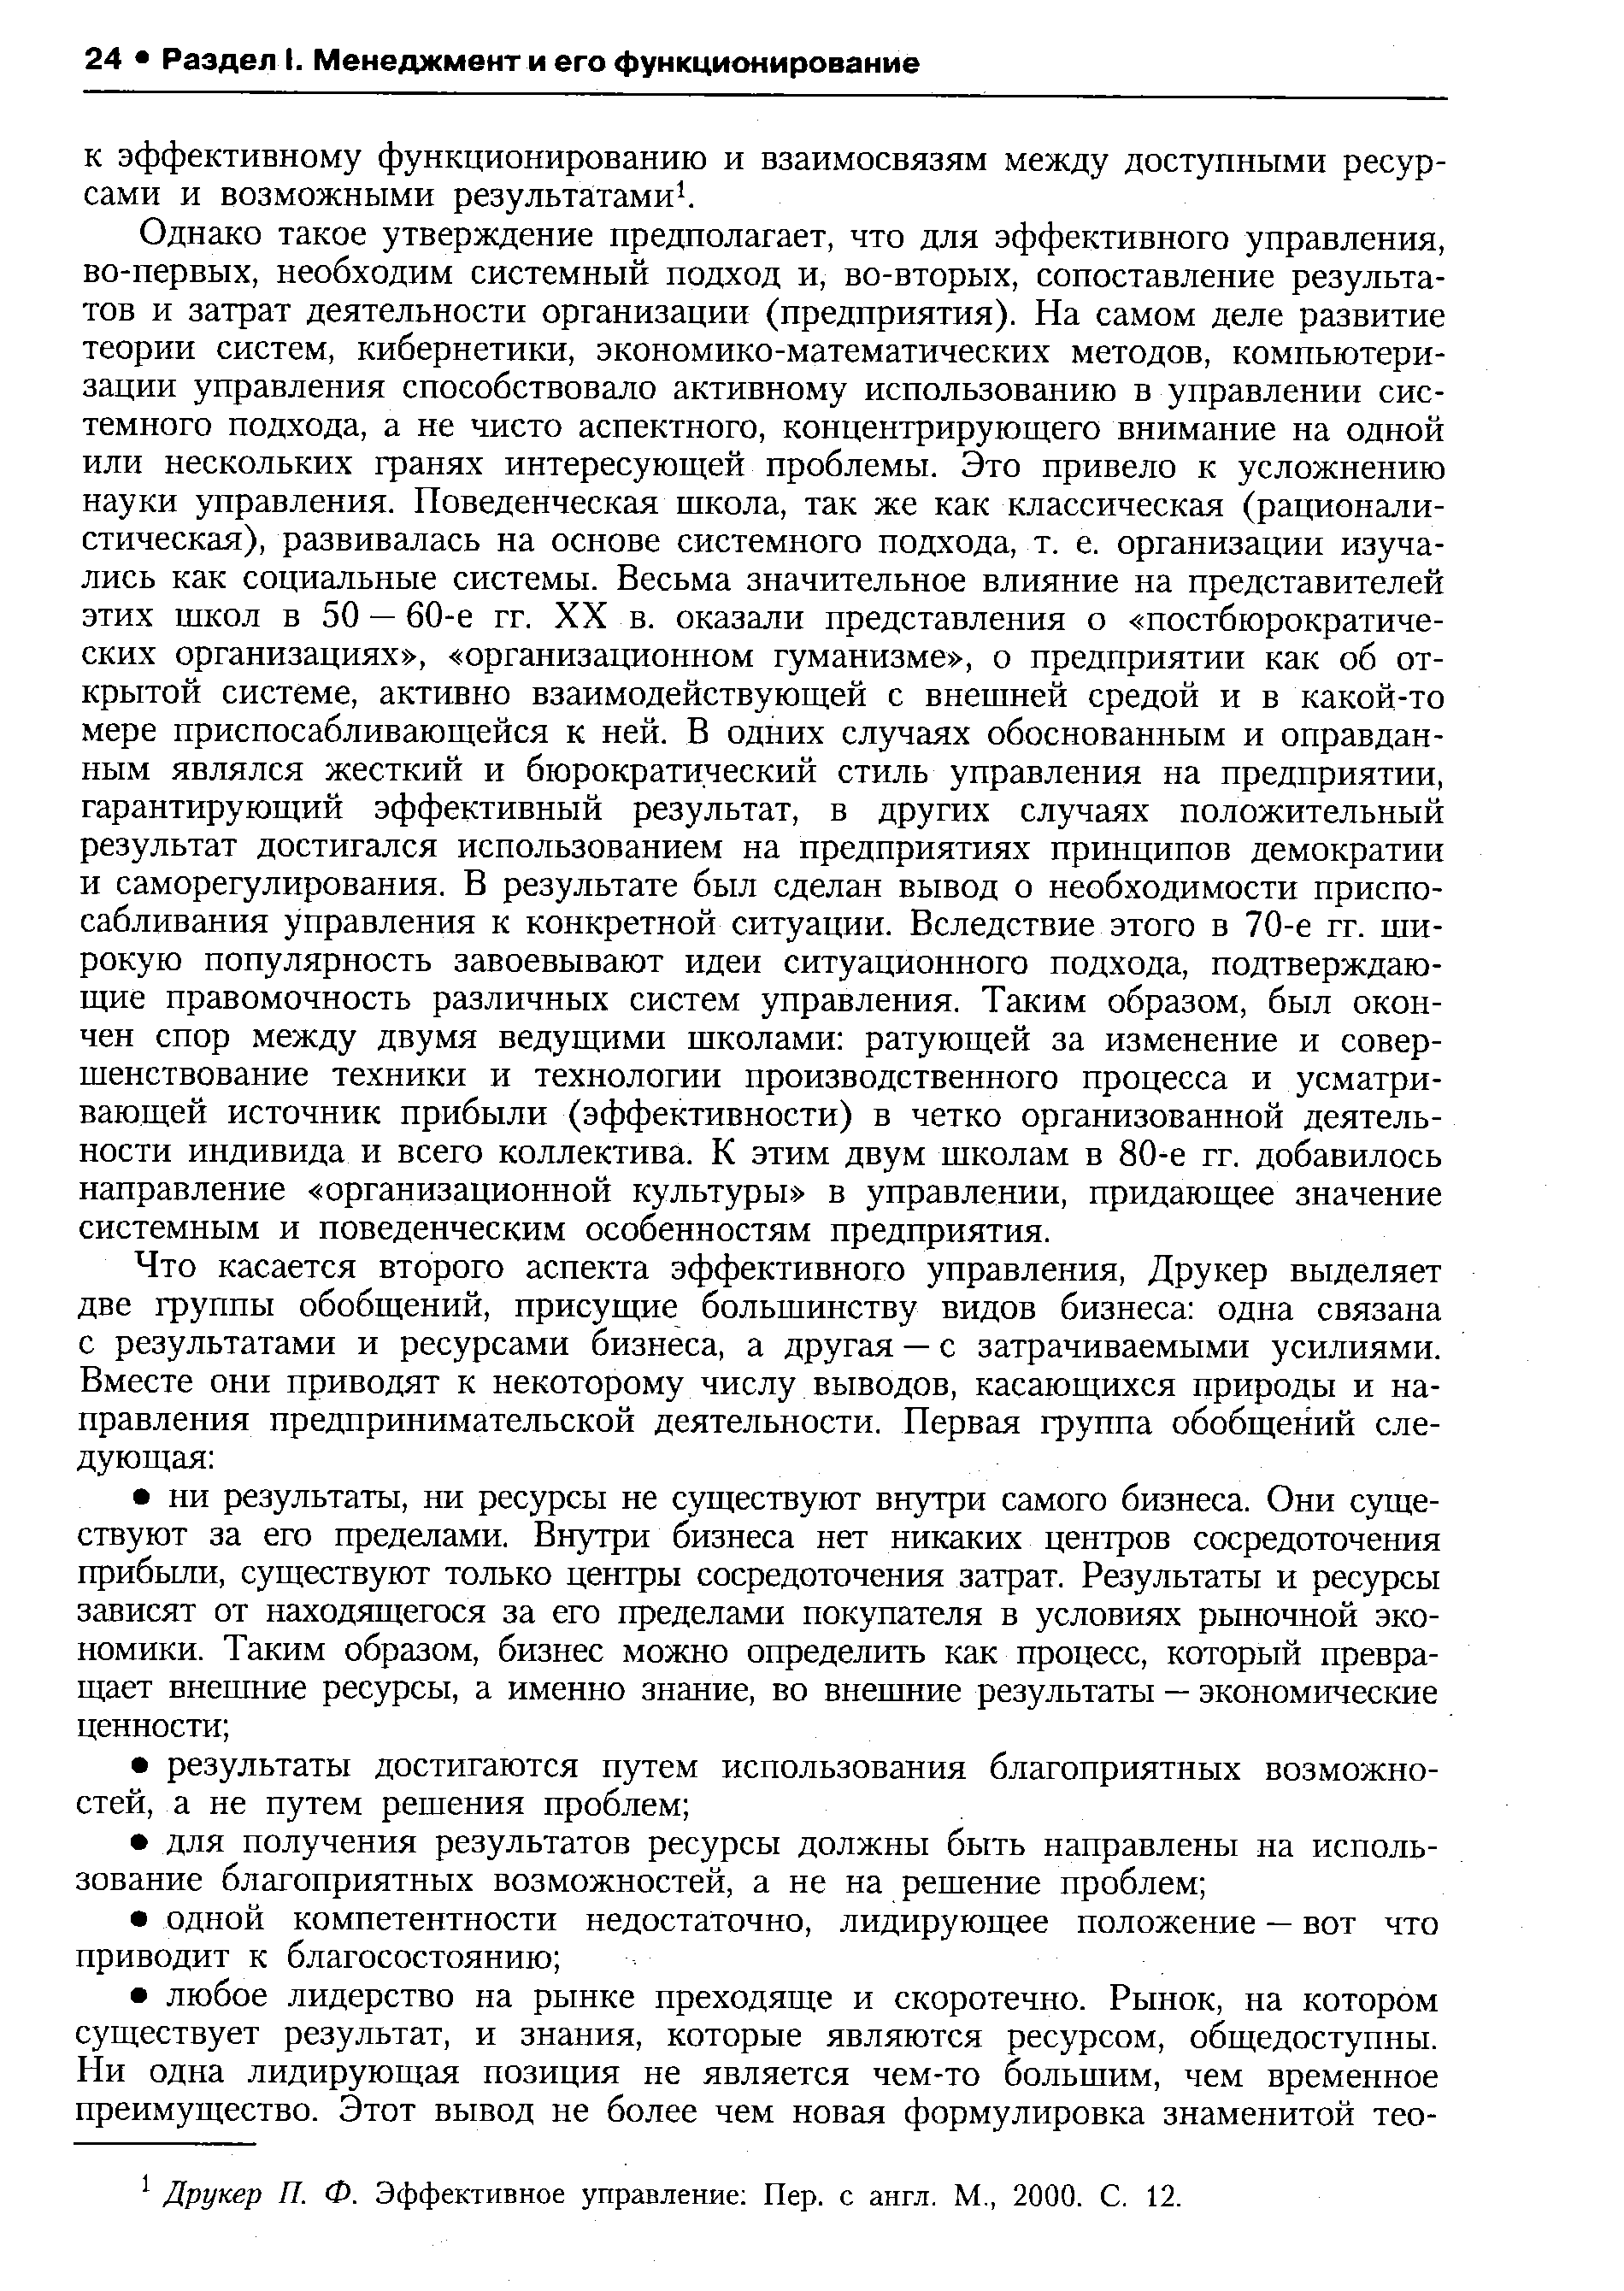 Друкер П. Ф. Эффективное управление Пер. с англ. М., 2000. С. 12.
